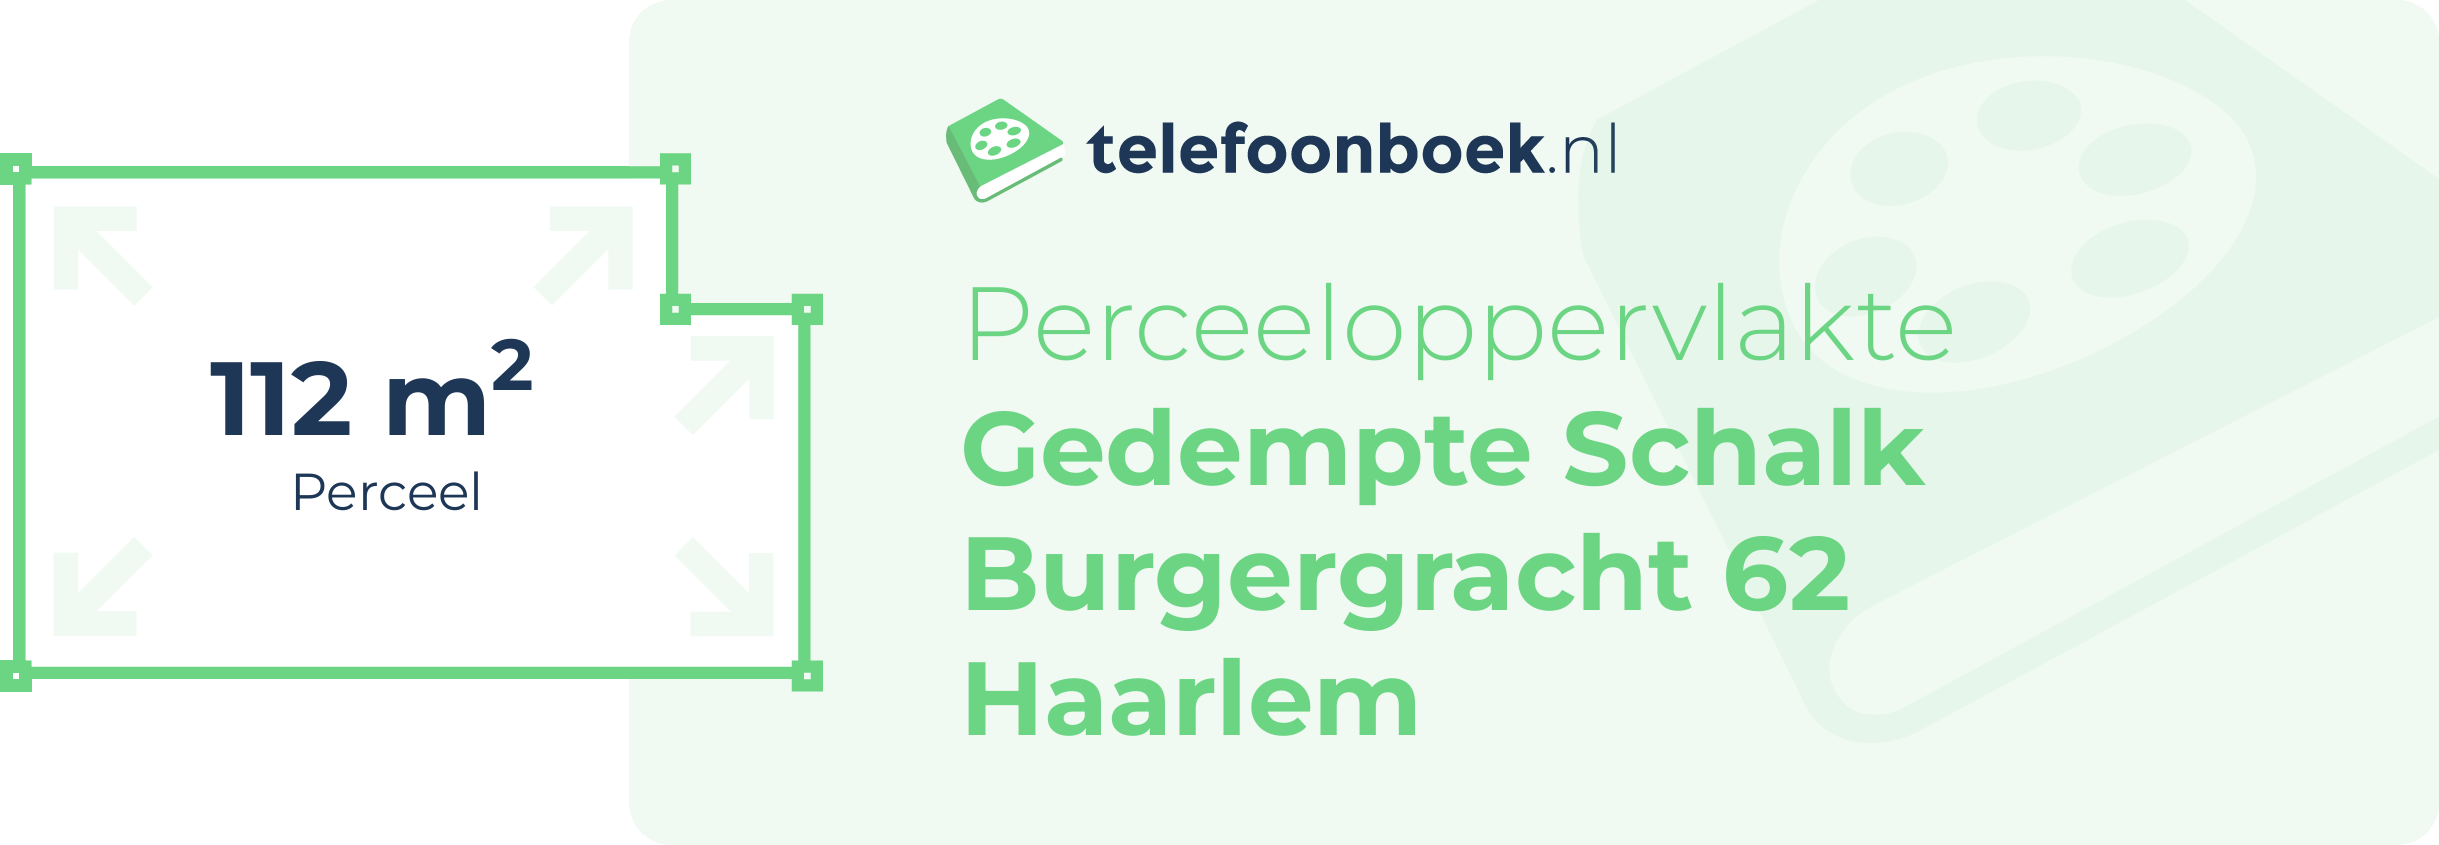 Perceeloppervlakte Gedempte Schalk Burgergracht 62 Haarlem